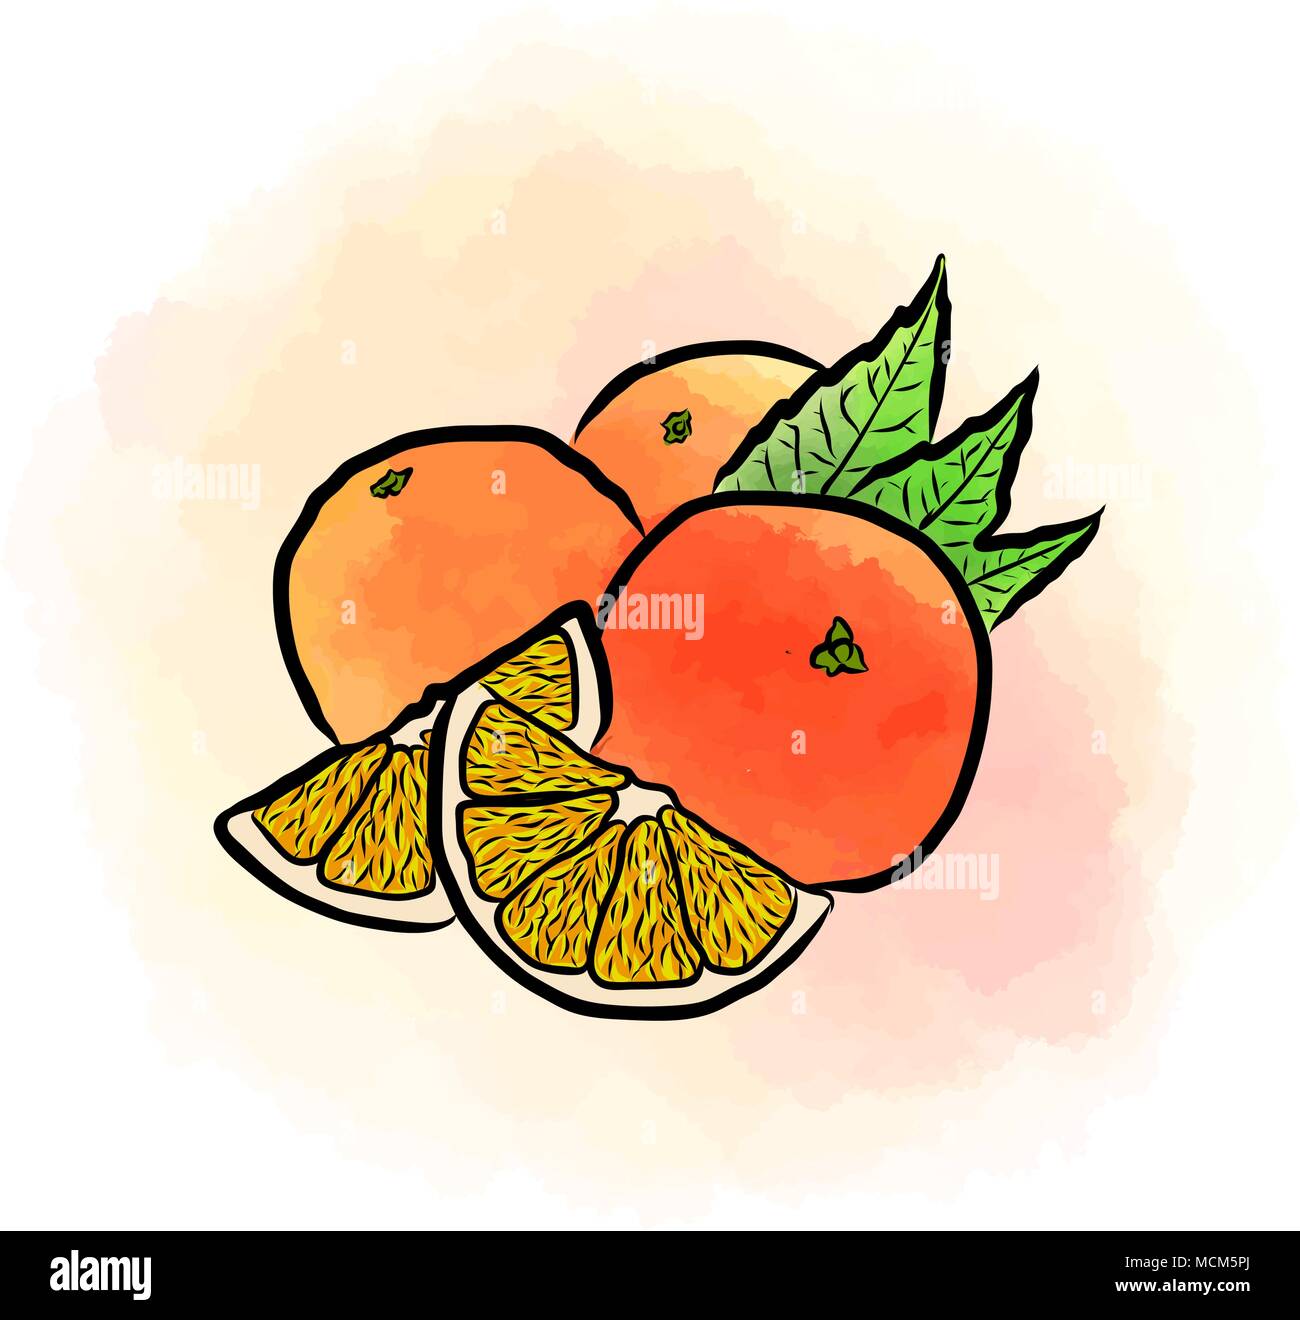 Farbige Zeichnung von Orangen. Frische vektor design von bunten Früchte in Aquarell Stil. Vector marketing Abbildung auf weißen Hintergrund. Stock Vektor